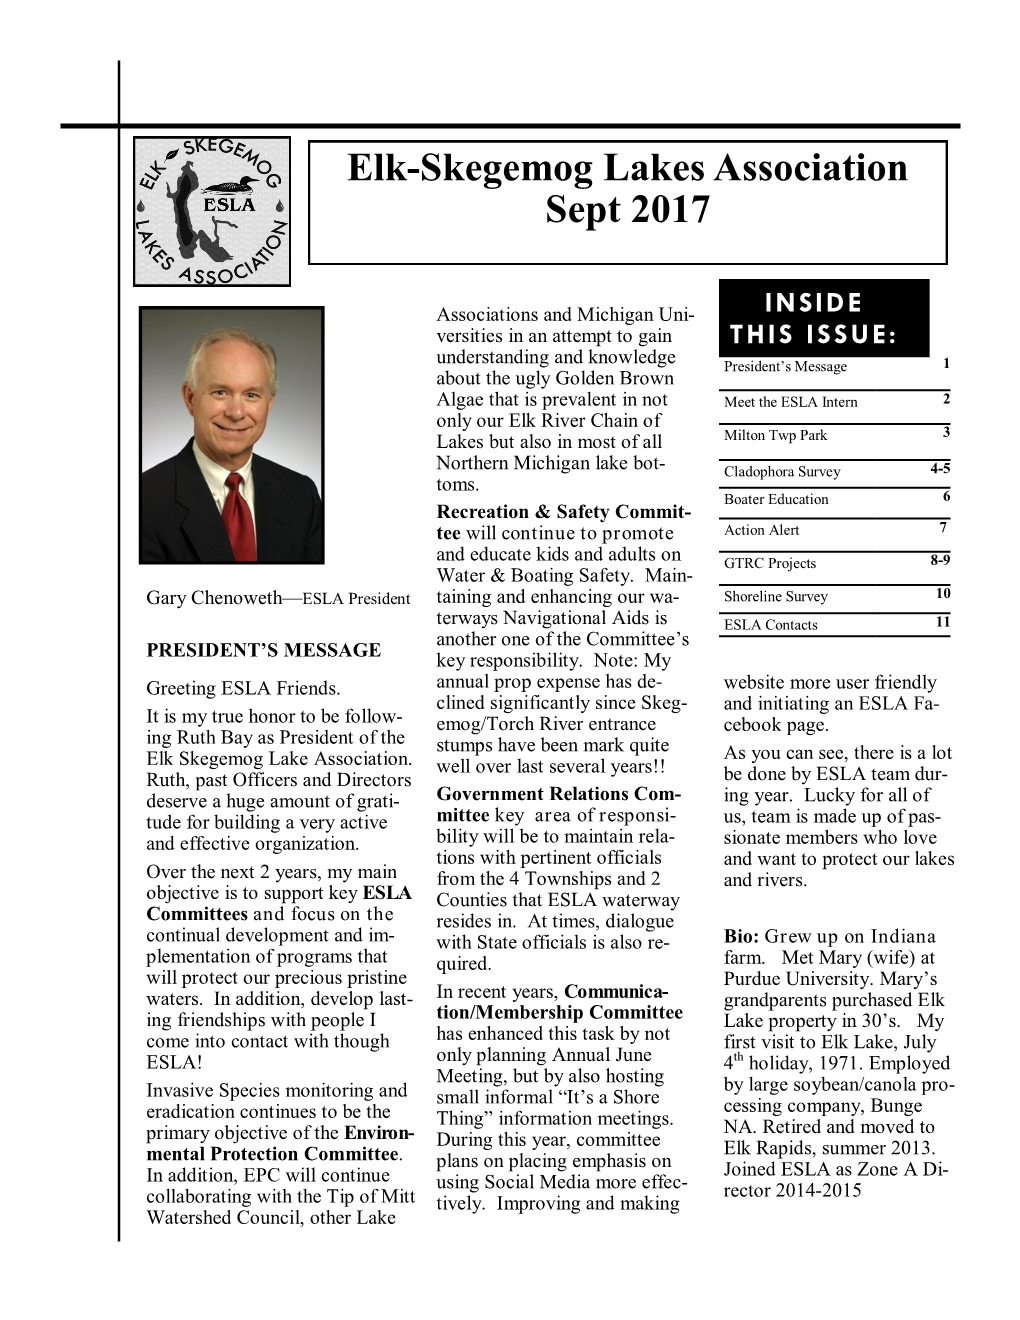 Elk-Skegemog Lakes Association Sept 2017